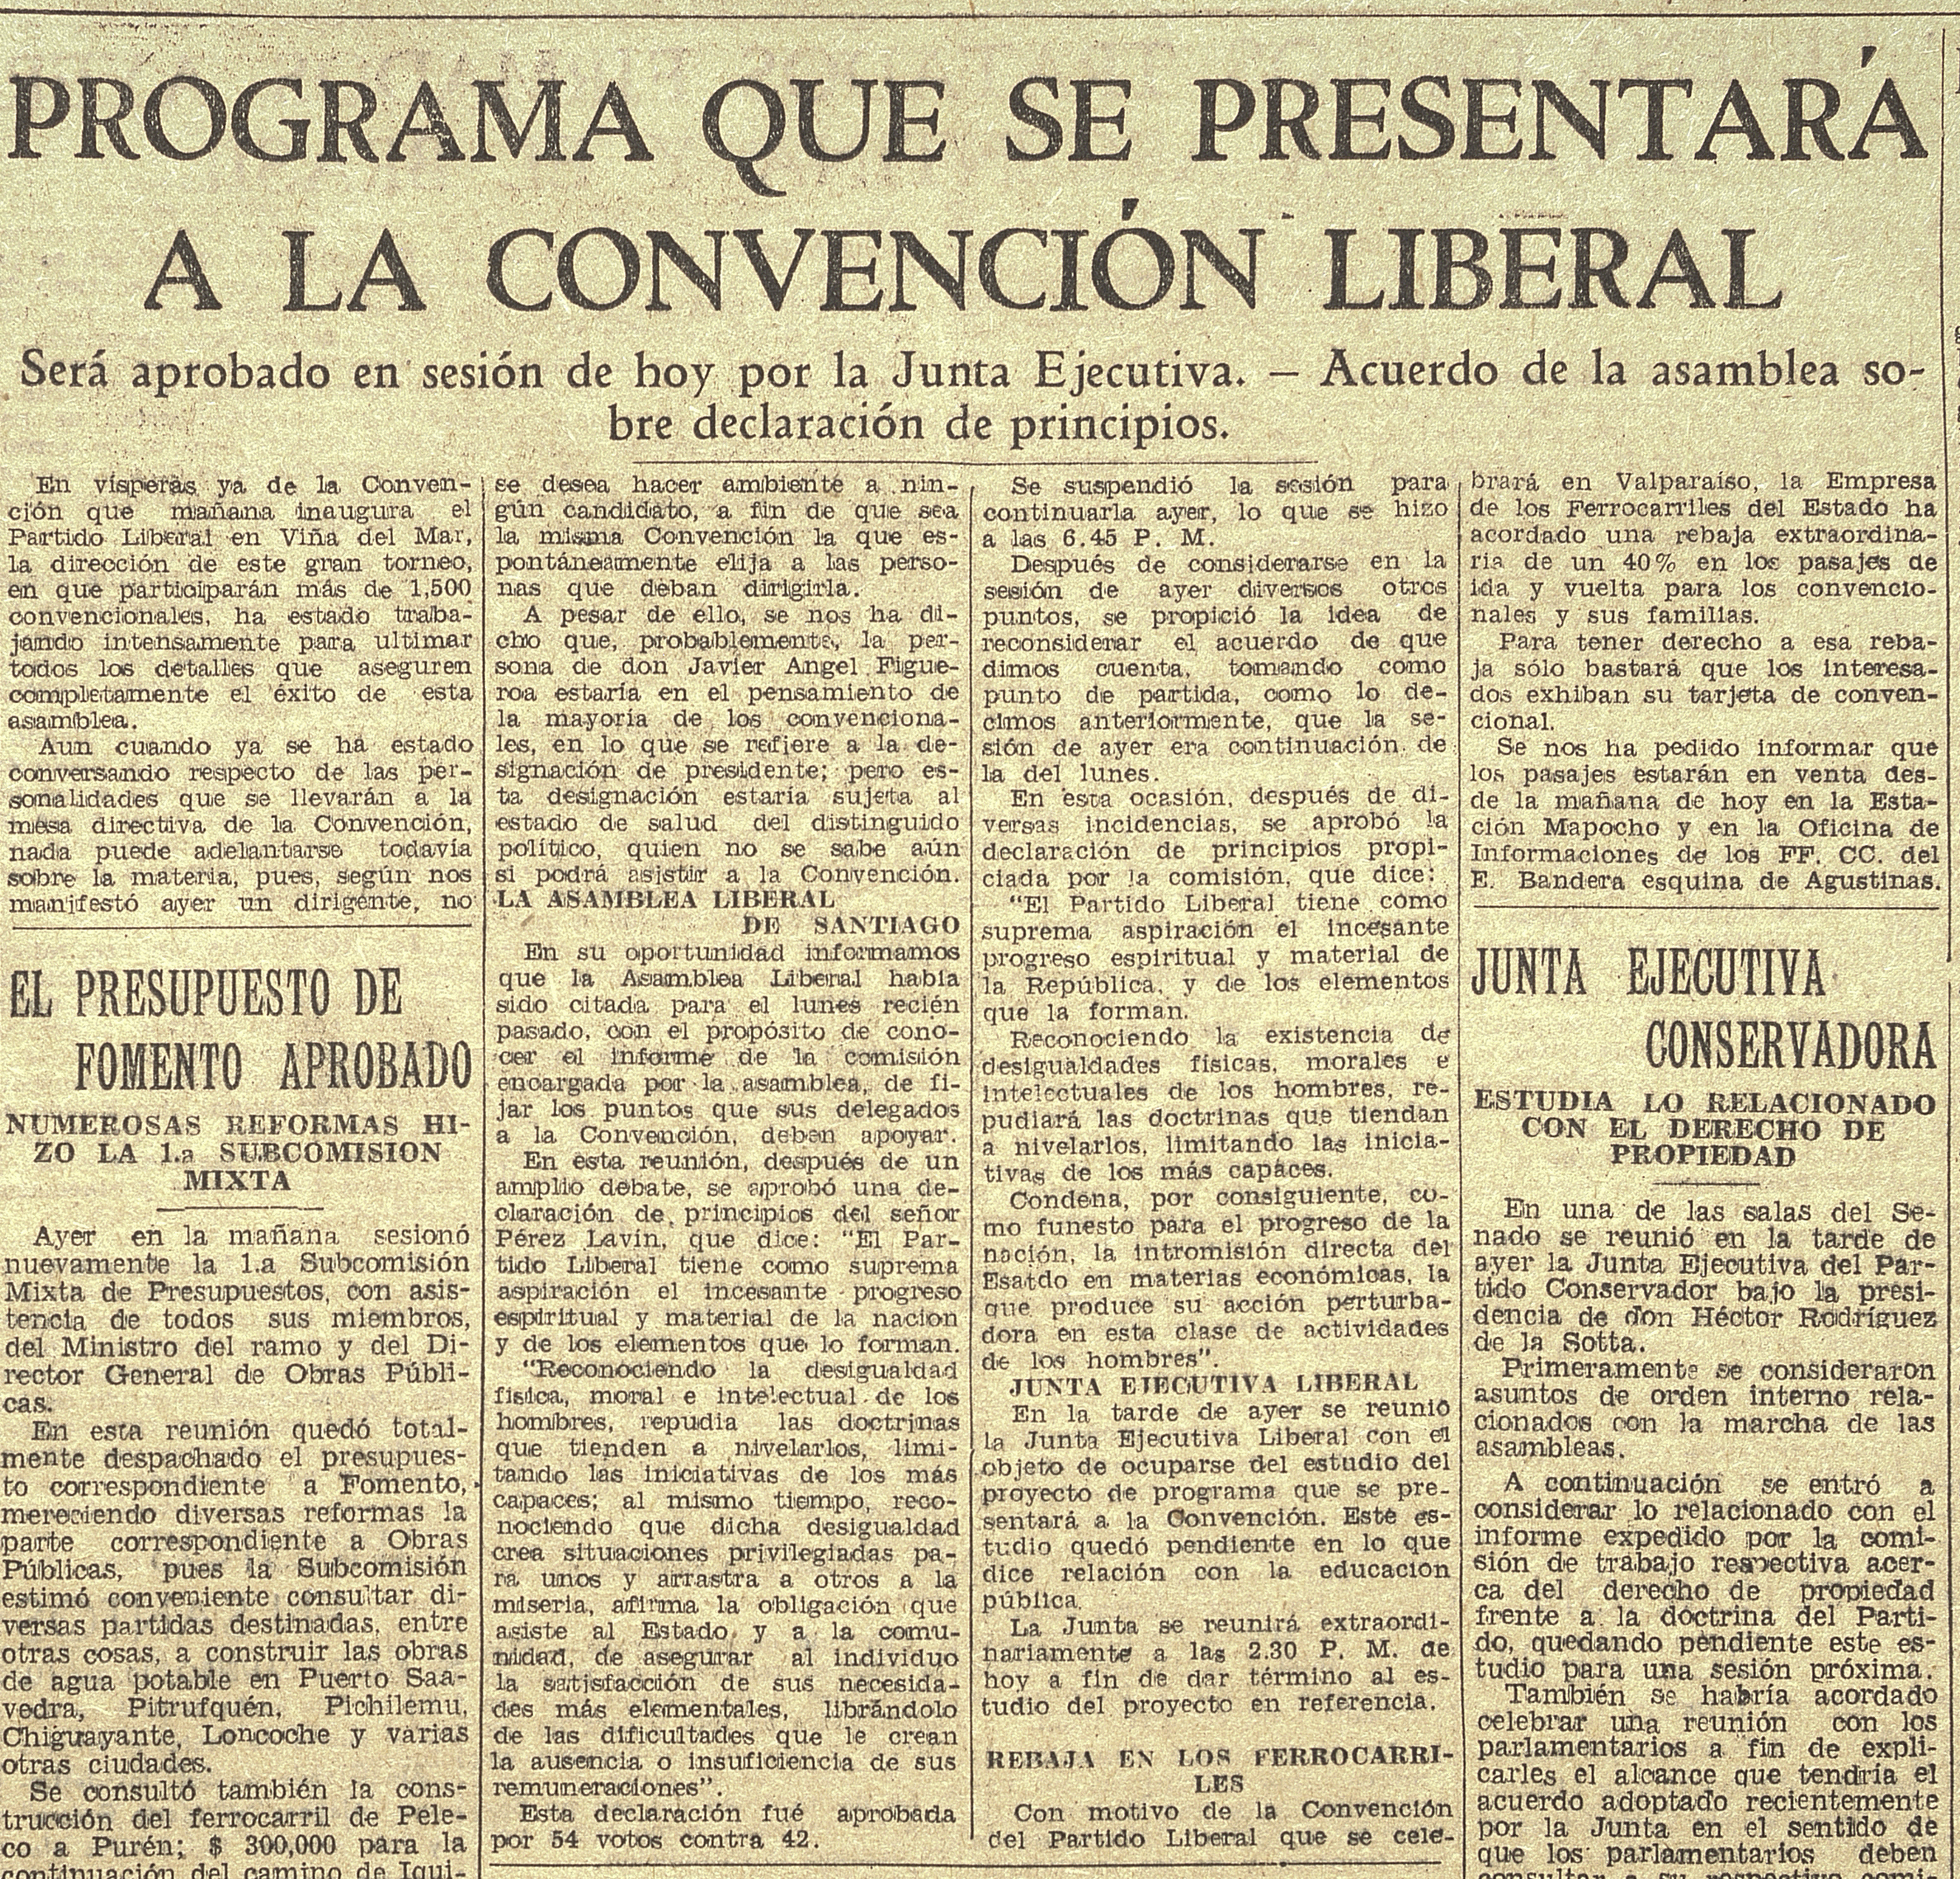 "Programa que se presentará a la Convención Liberal", Diario El mercurio, Santiago, miércoles 11 de octubre de 1933